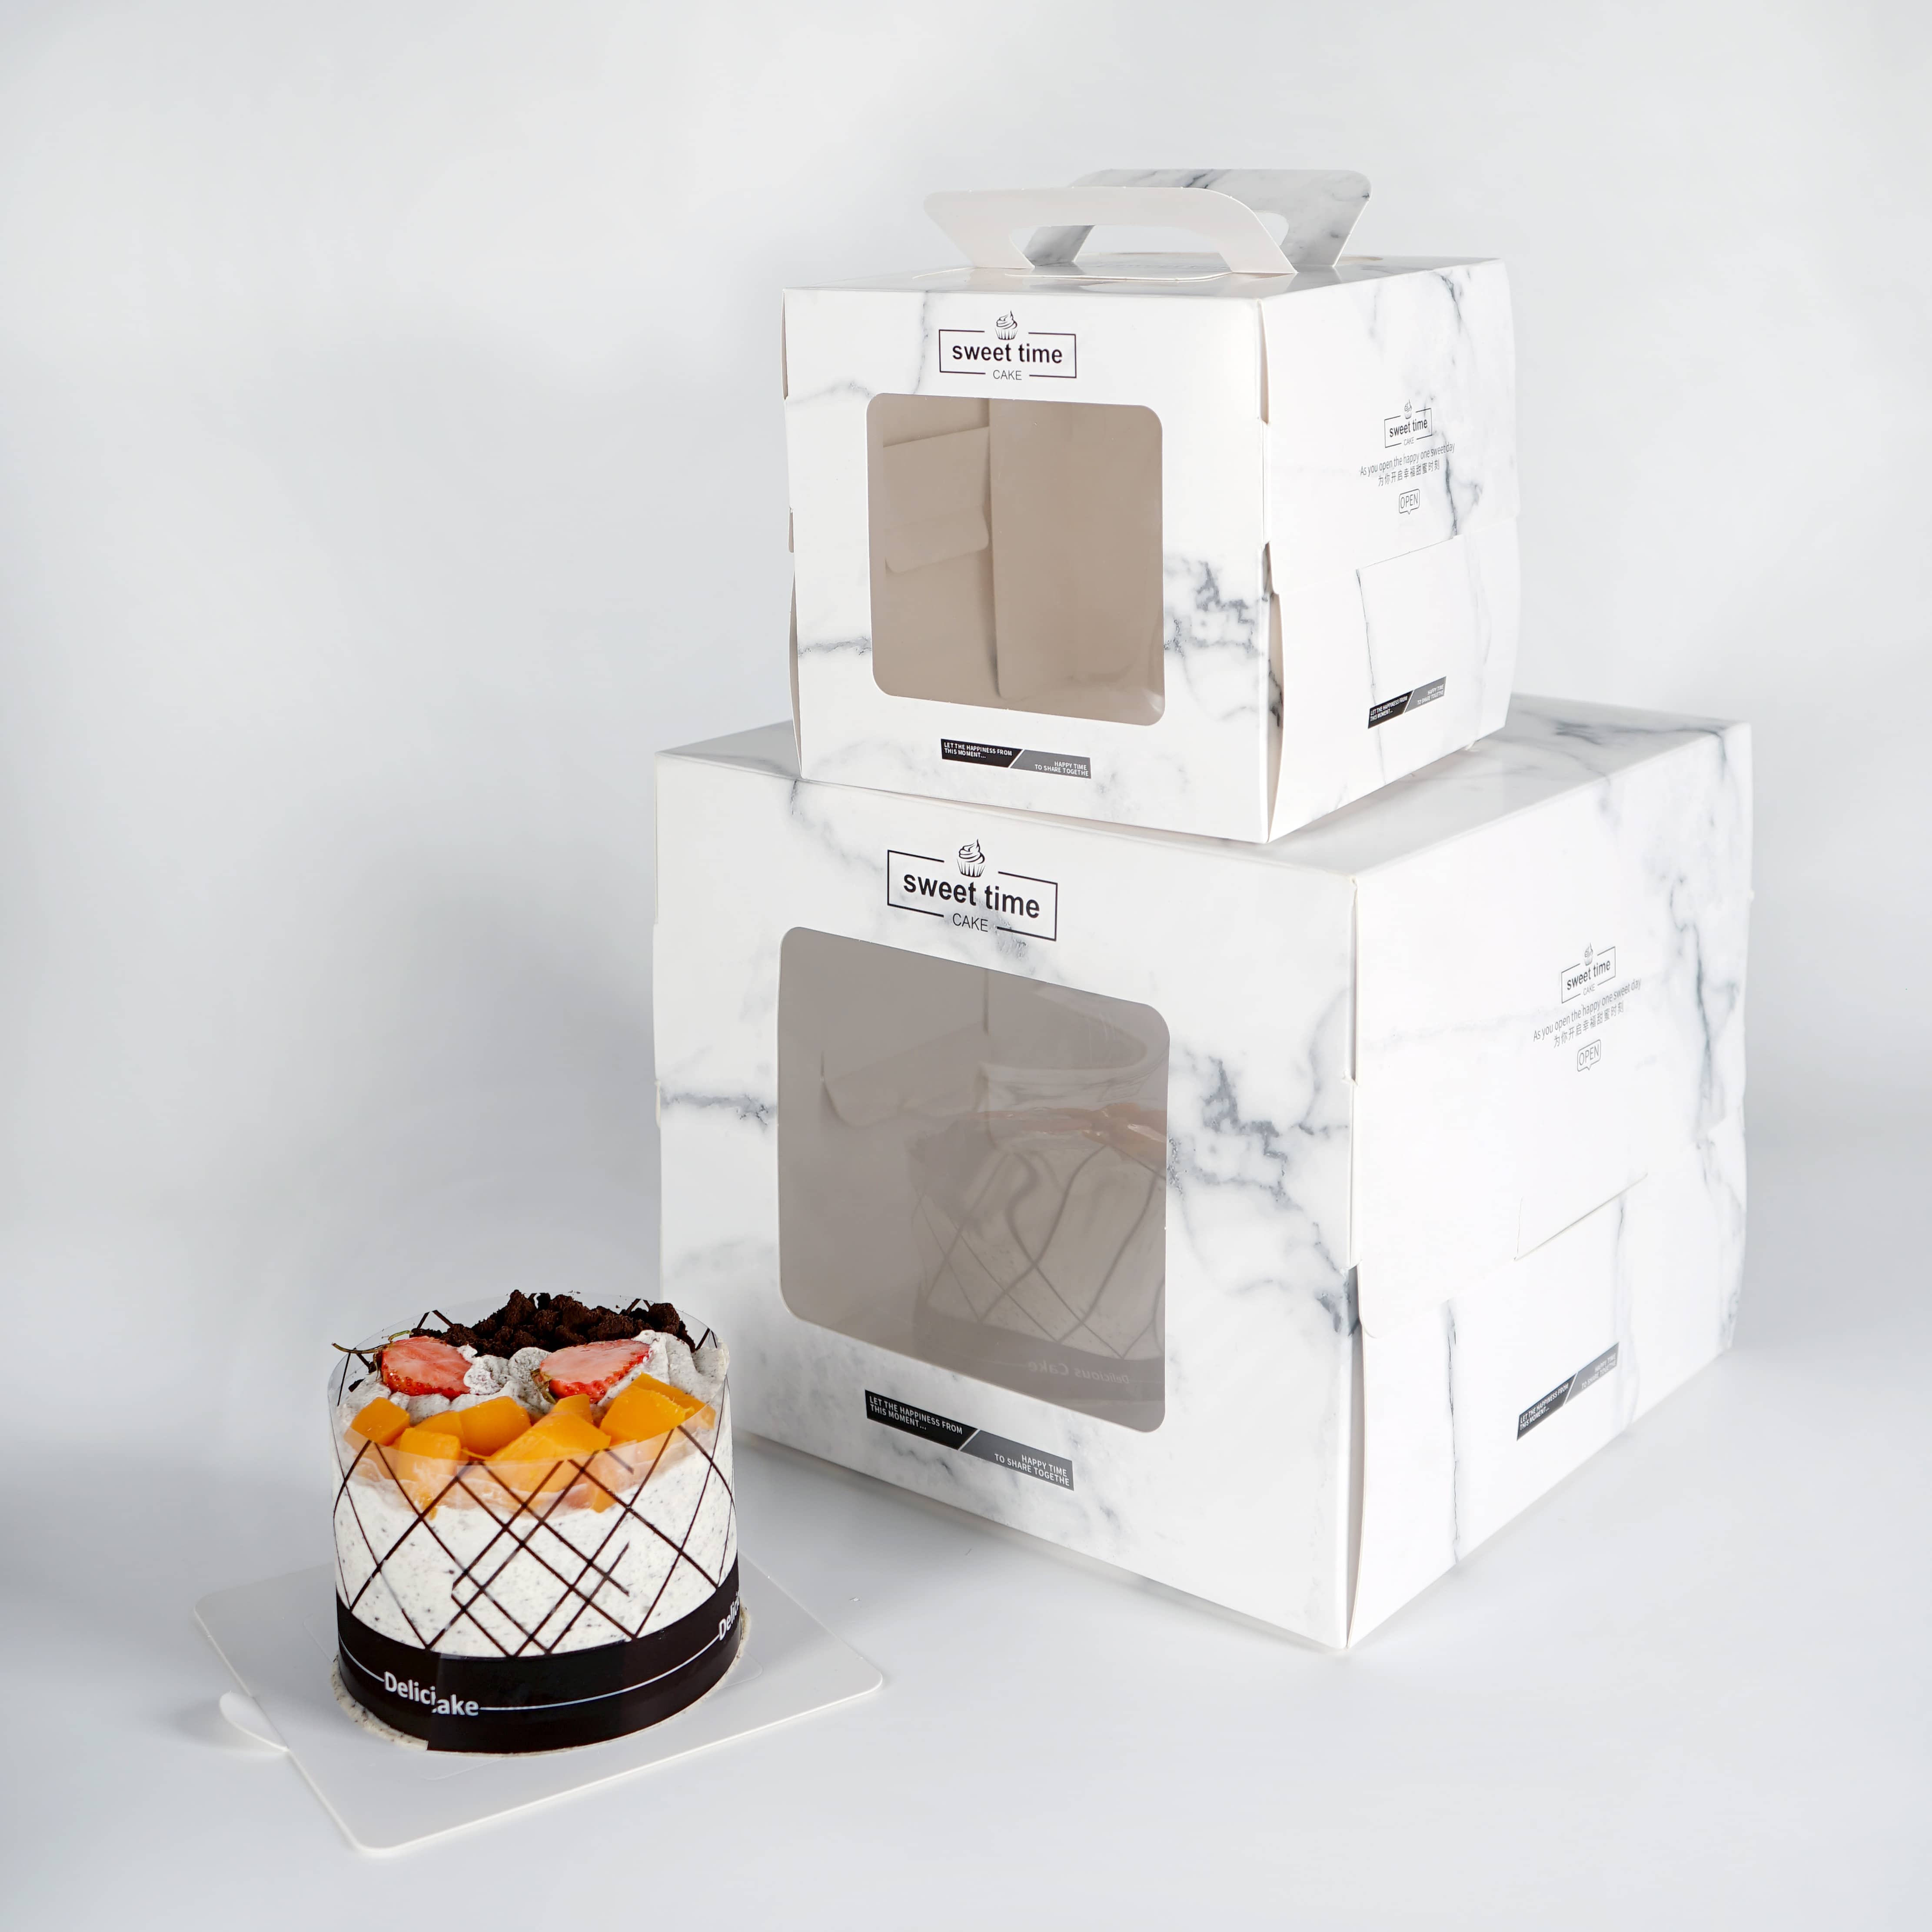 स्क्वायर उन्नत टेक्नोलोजी मार्बल क्यारियर झोला विन्डोको साथ कागज केक बक्स